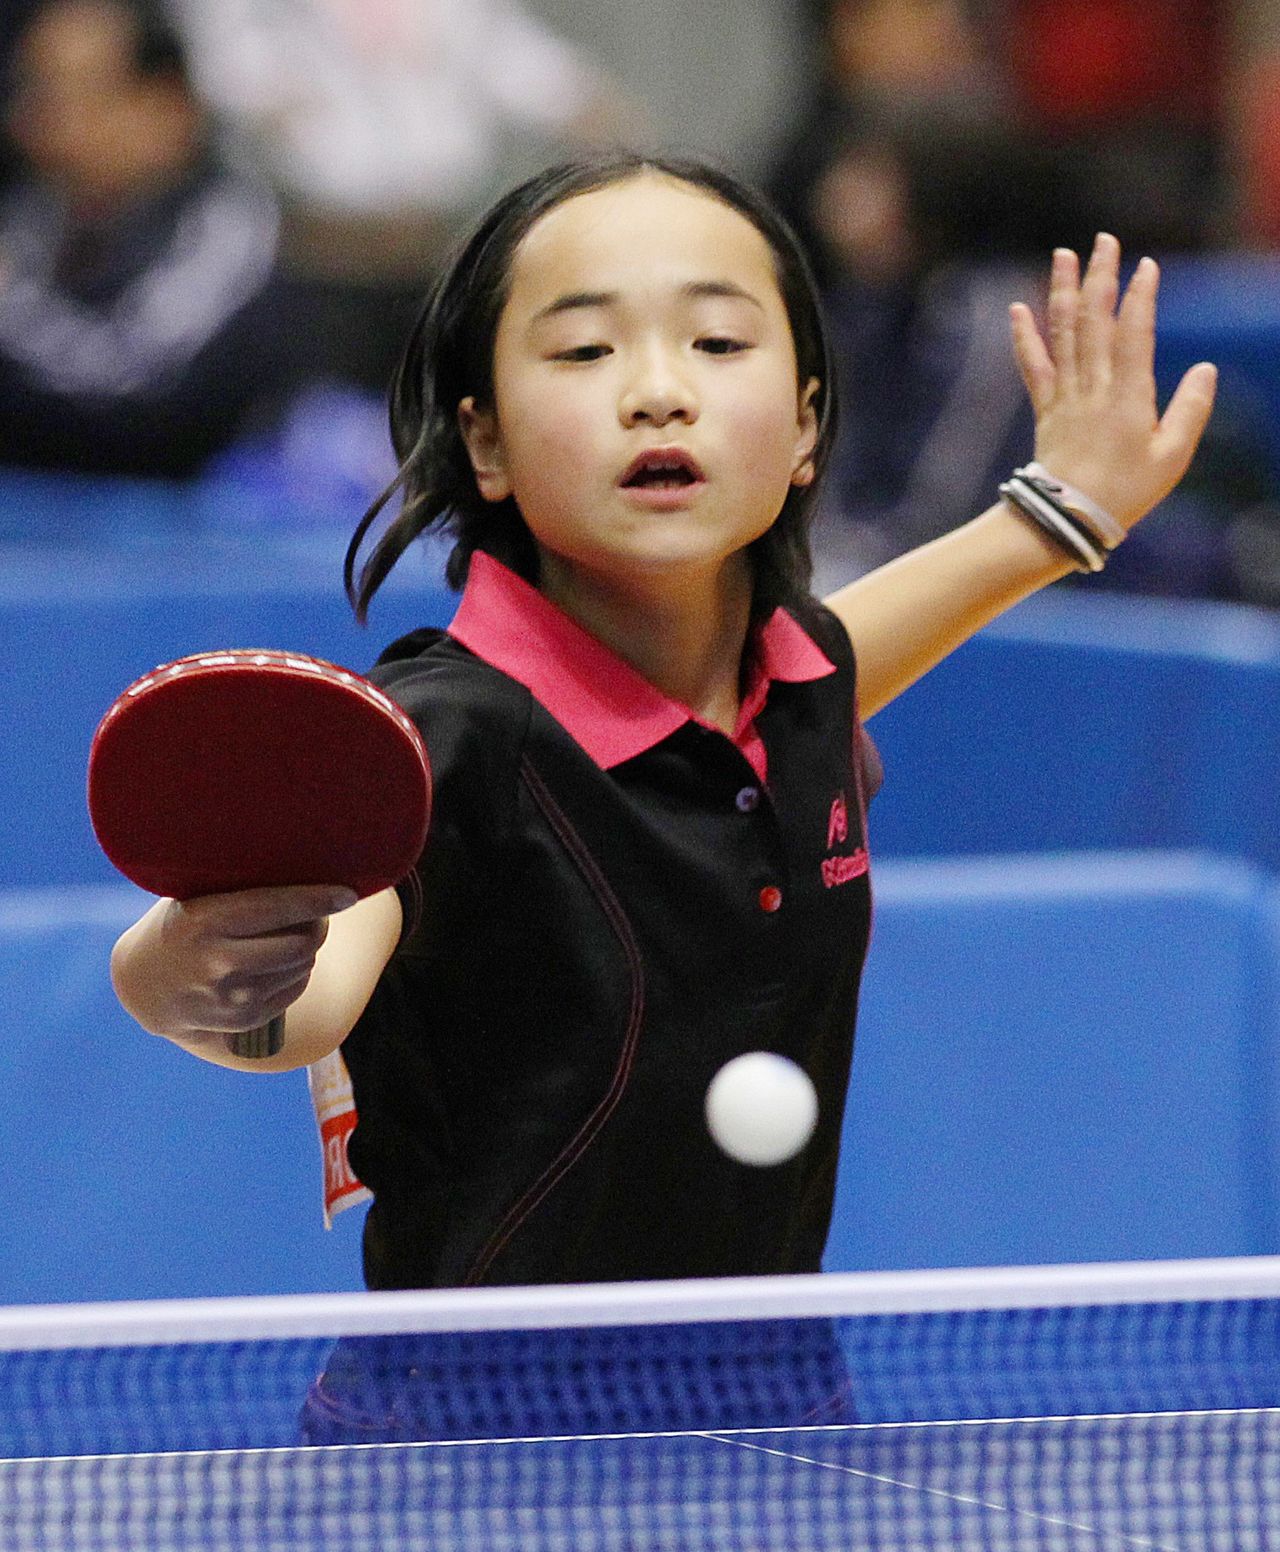 إيتو في العاشرة من عمرها تصد تسديدة في بطولات جميع اليابان لتنس الطاولة في 19 يناير/كانون الثاني عام 2011 (حقوق الصورة جيجي برس).